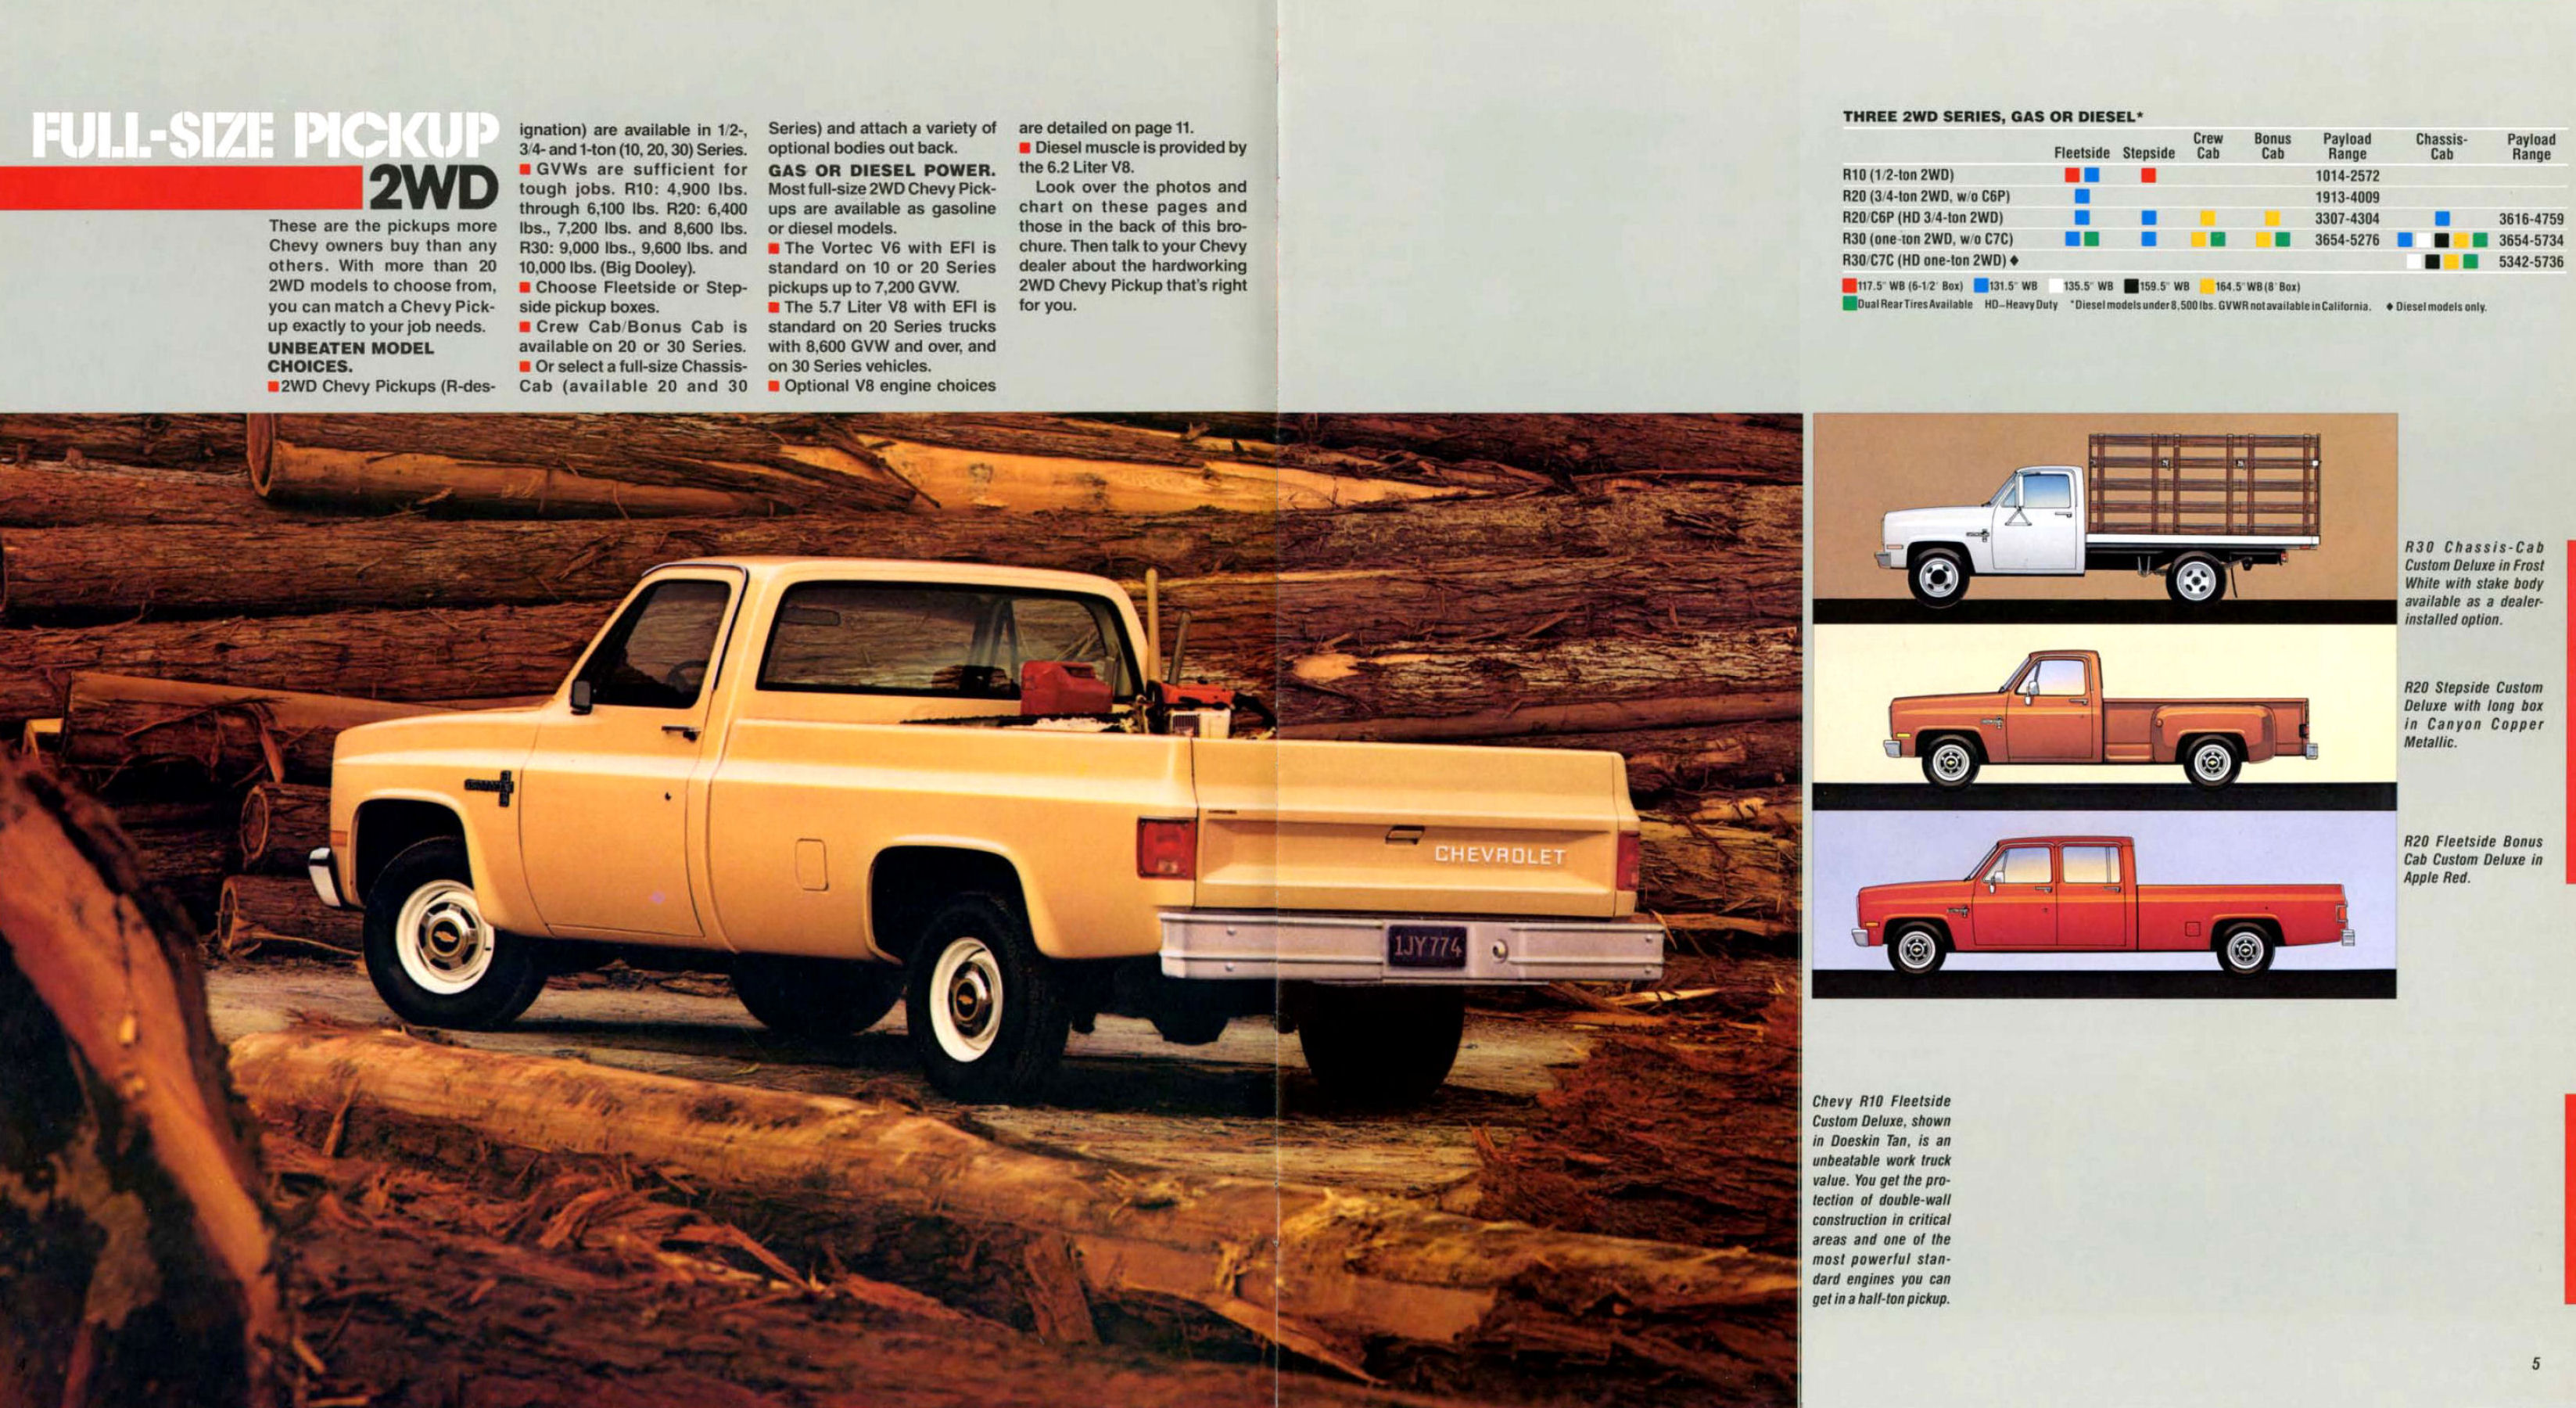 1987 Chevrolet Full Size Pickup-04-05